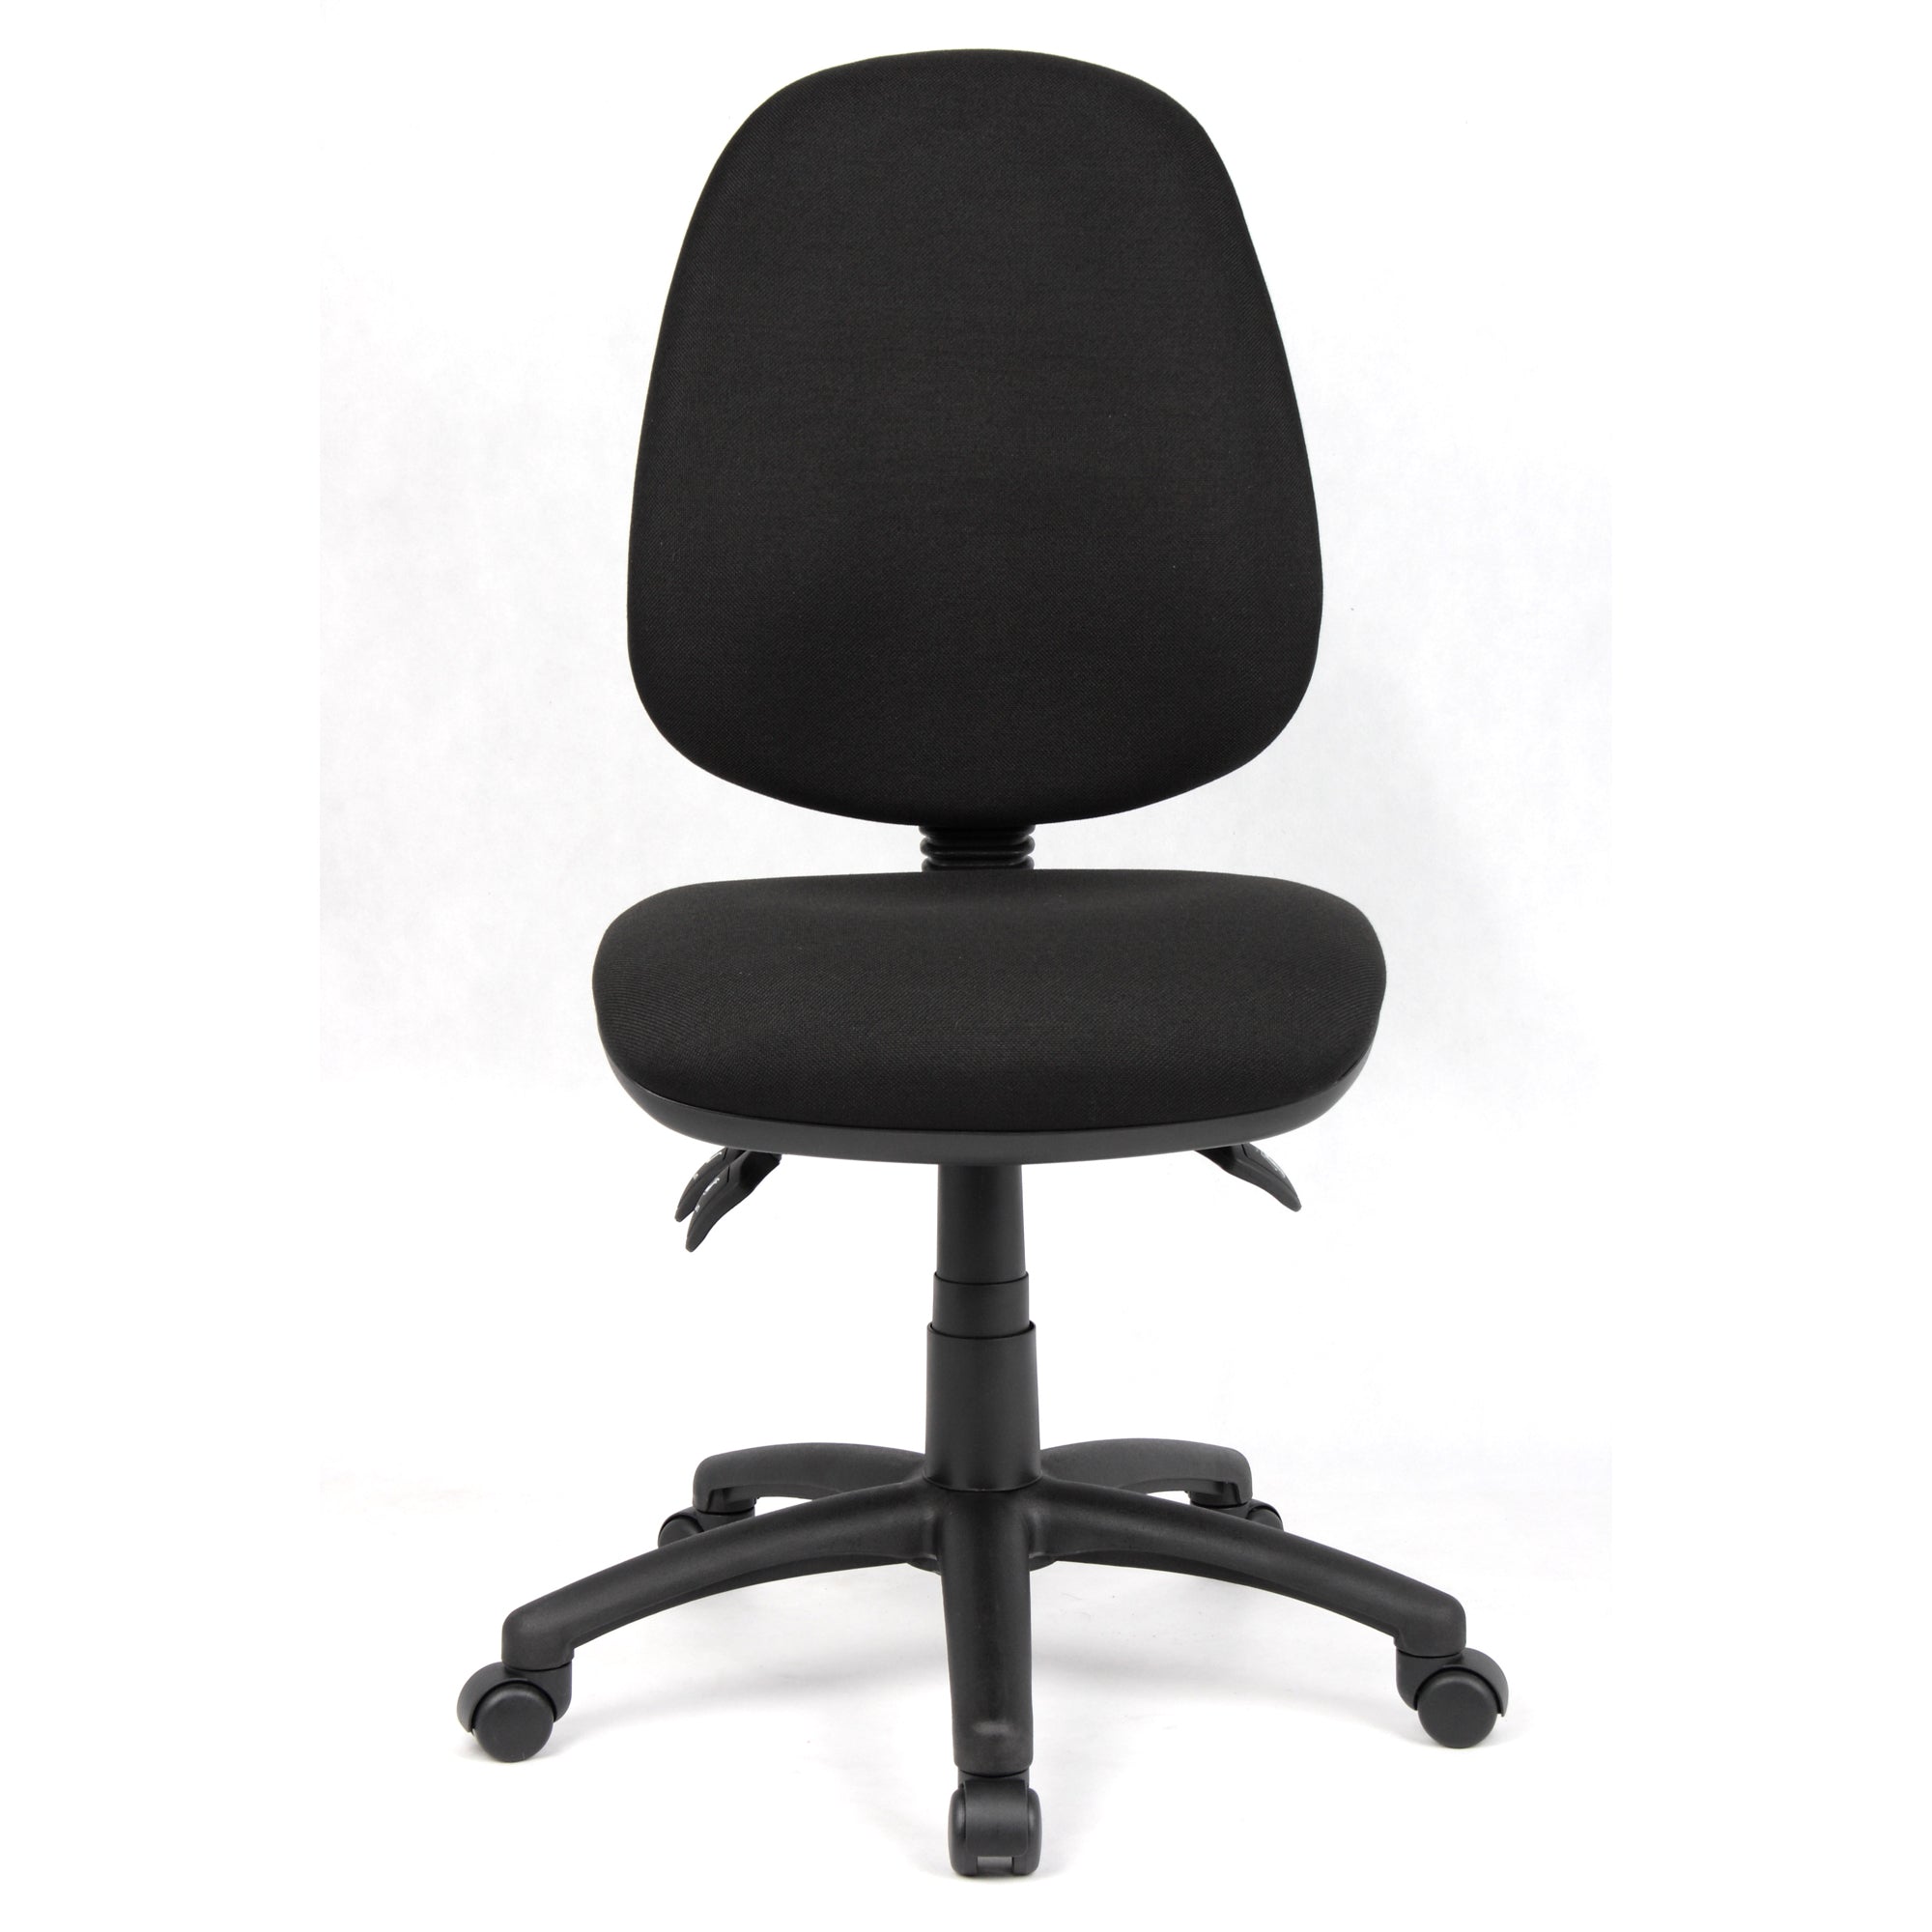 Typist Office Chair